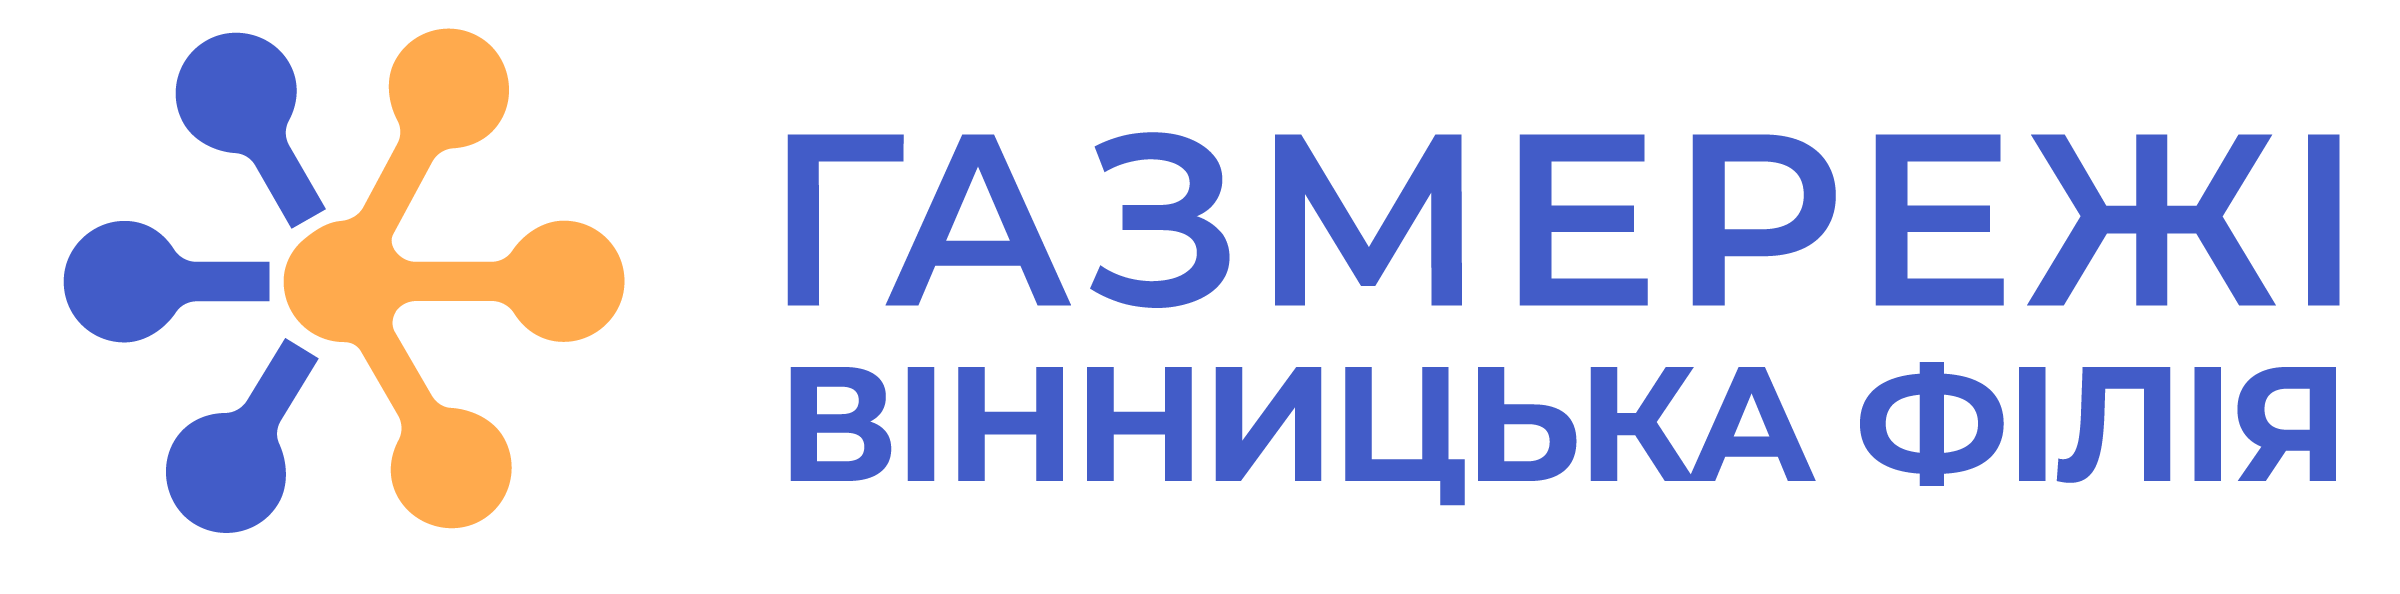 Вінницька філія ТОВ «Газорозподільні мережі України»